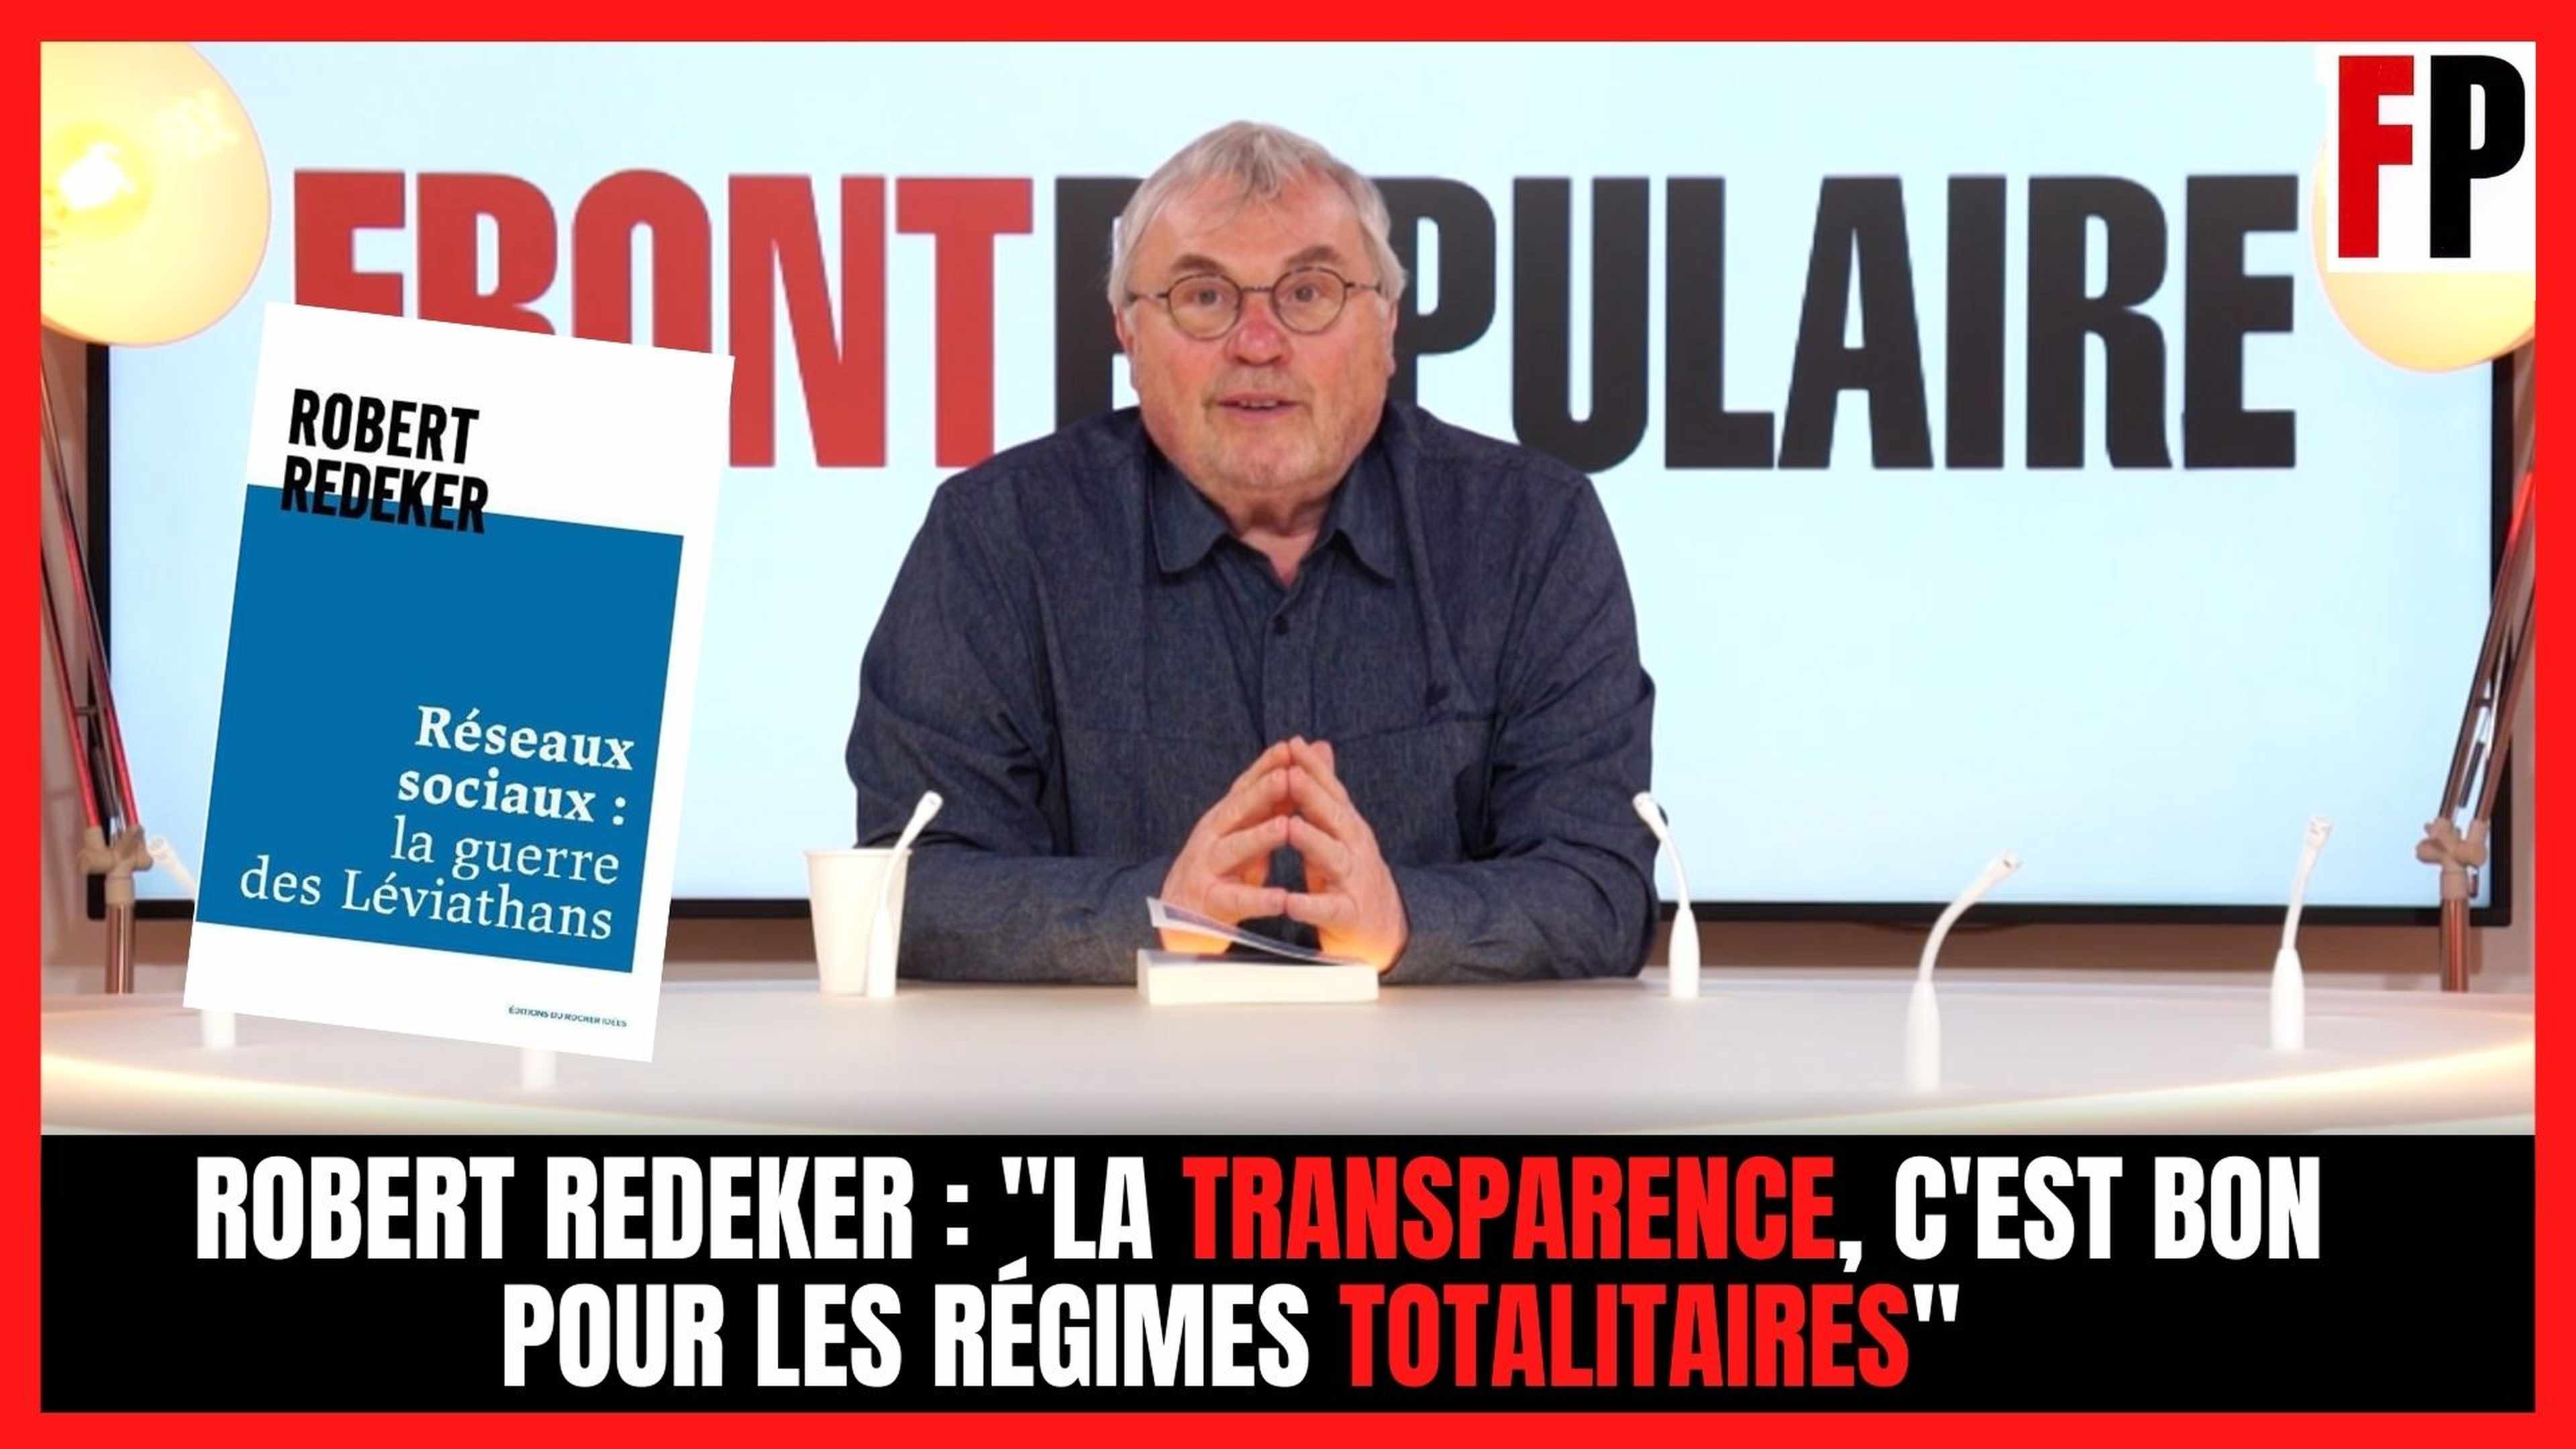 Robert Redeker : "La transparence, c'est bon pour les régimes totalitaires"